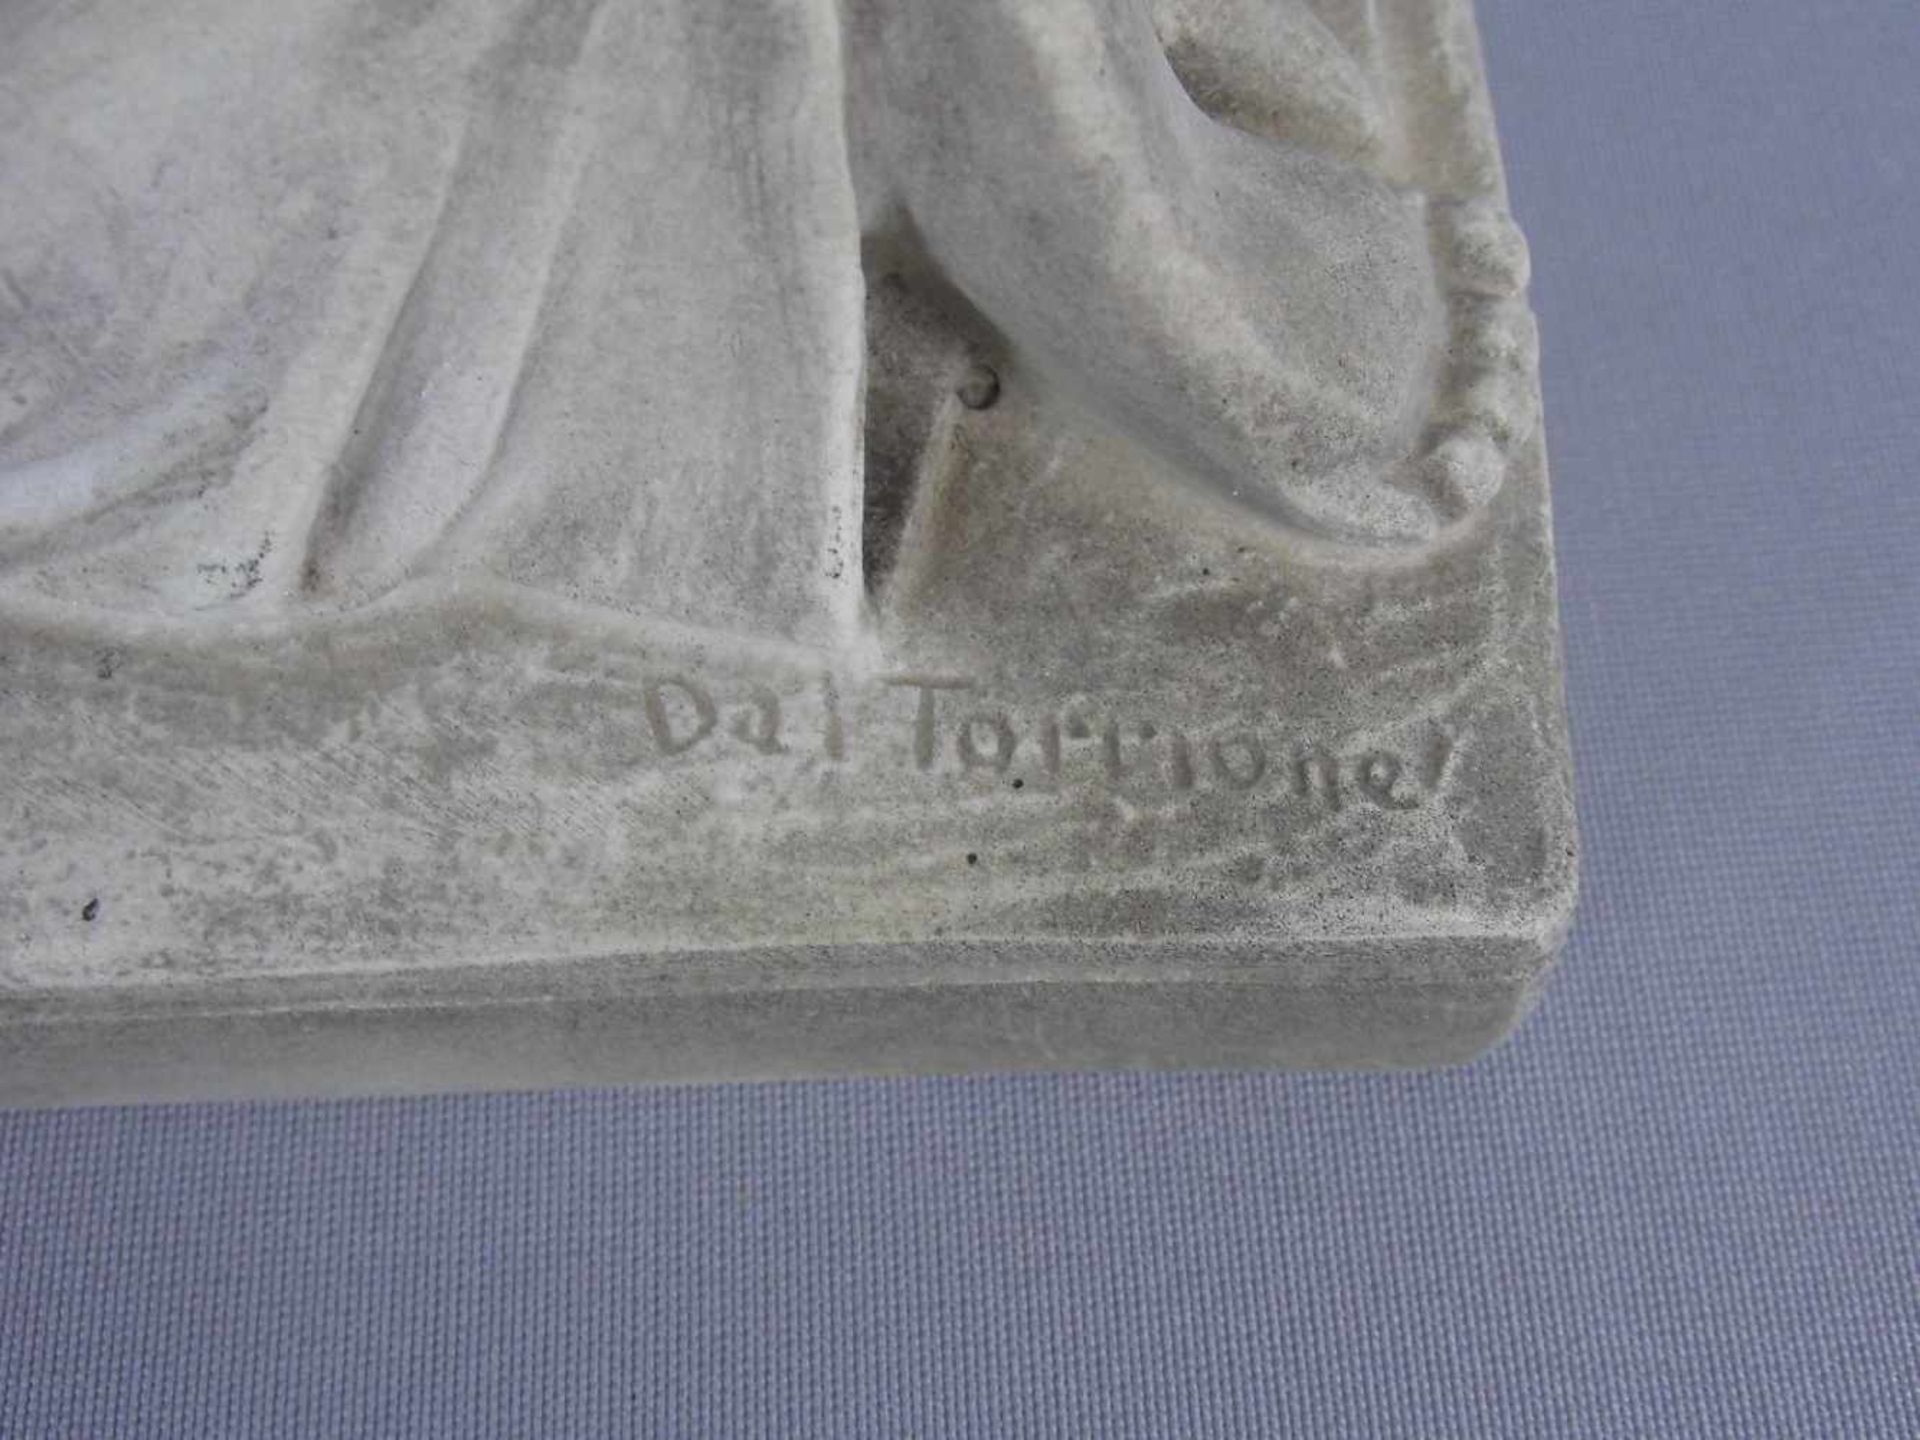 DAL TORRIONE, LORENZO (20. Jh.), Skulptur / sculpure: "Engel", Steinguss, auf der Plinthe vertieft - Bild 3 aus 4